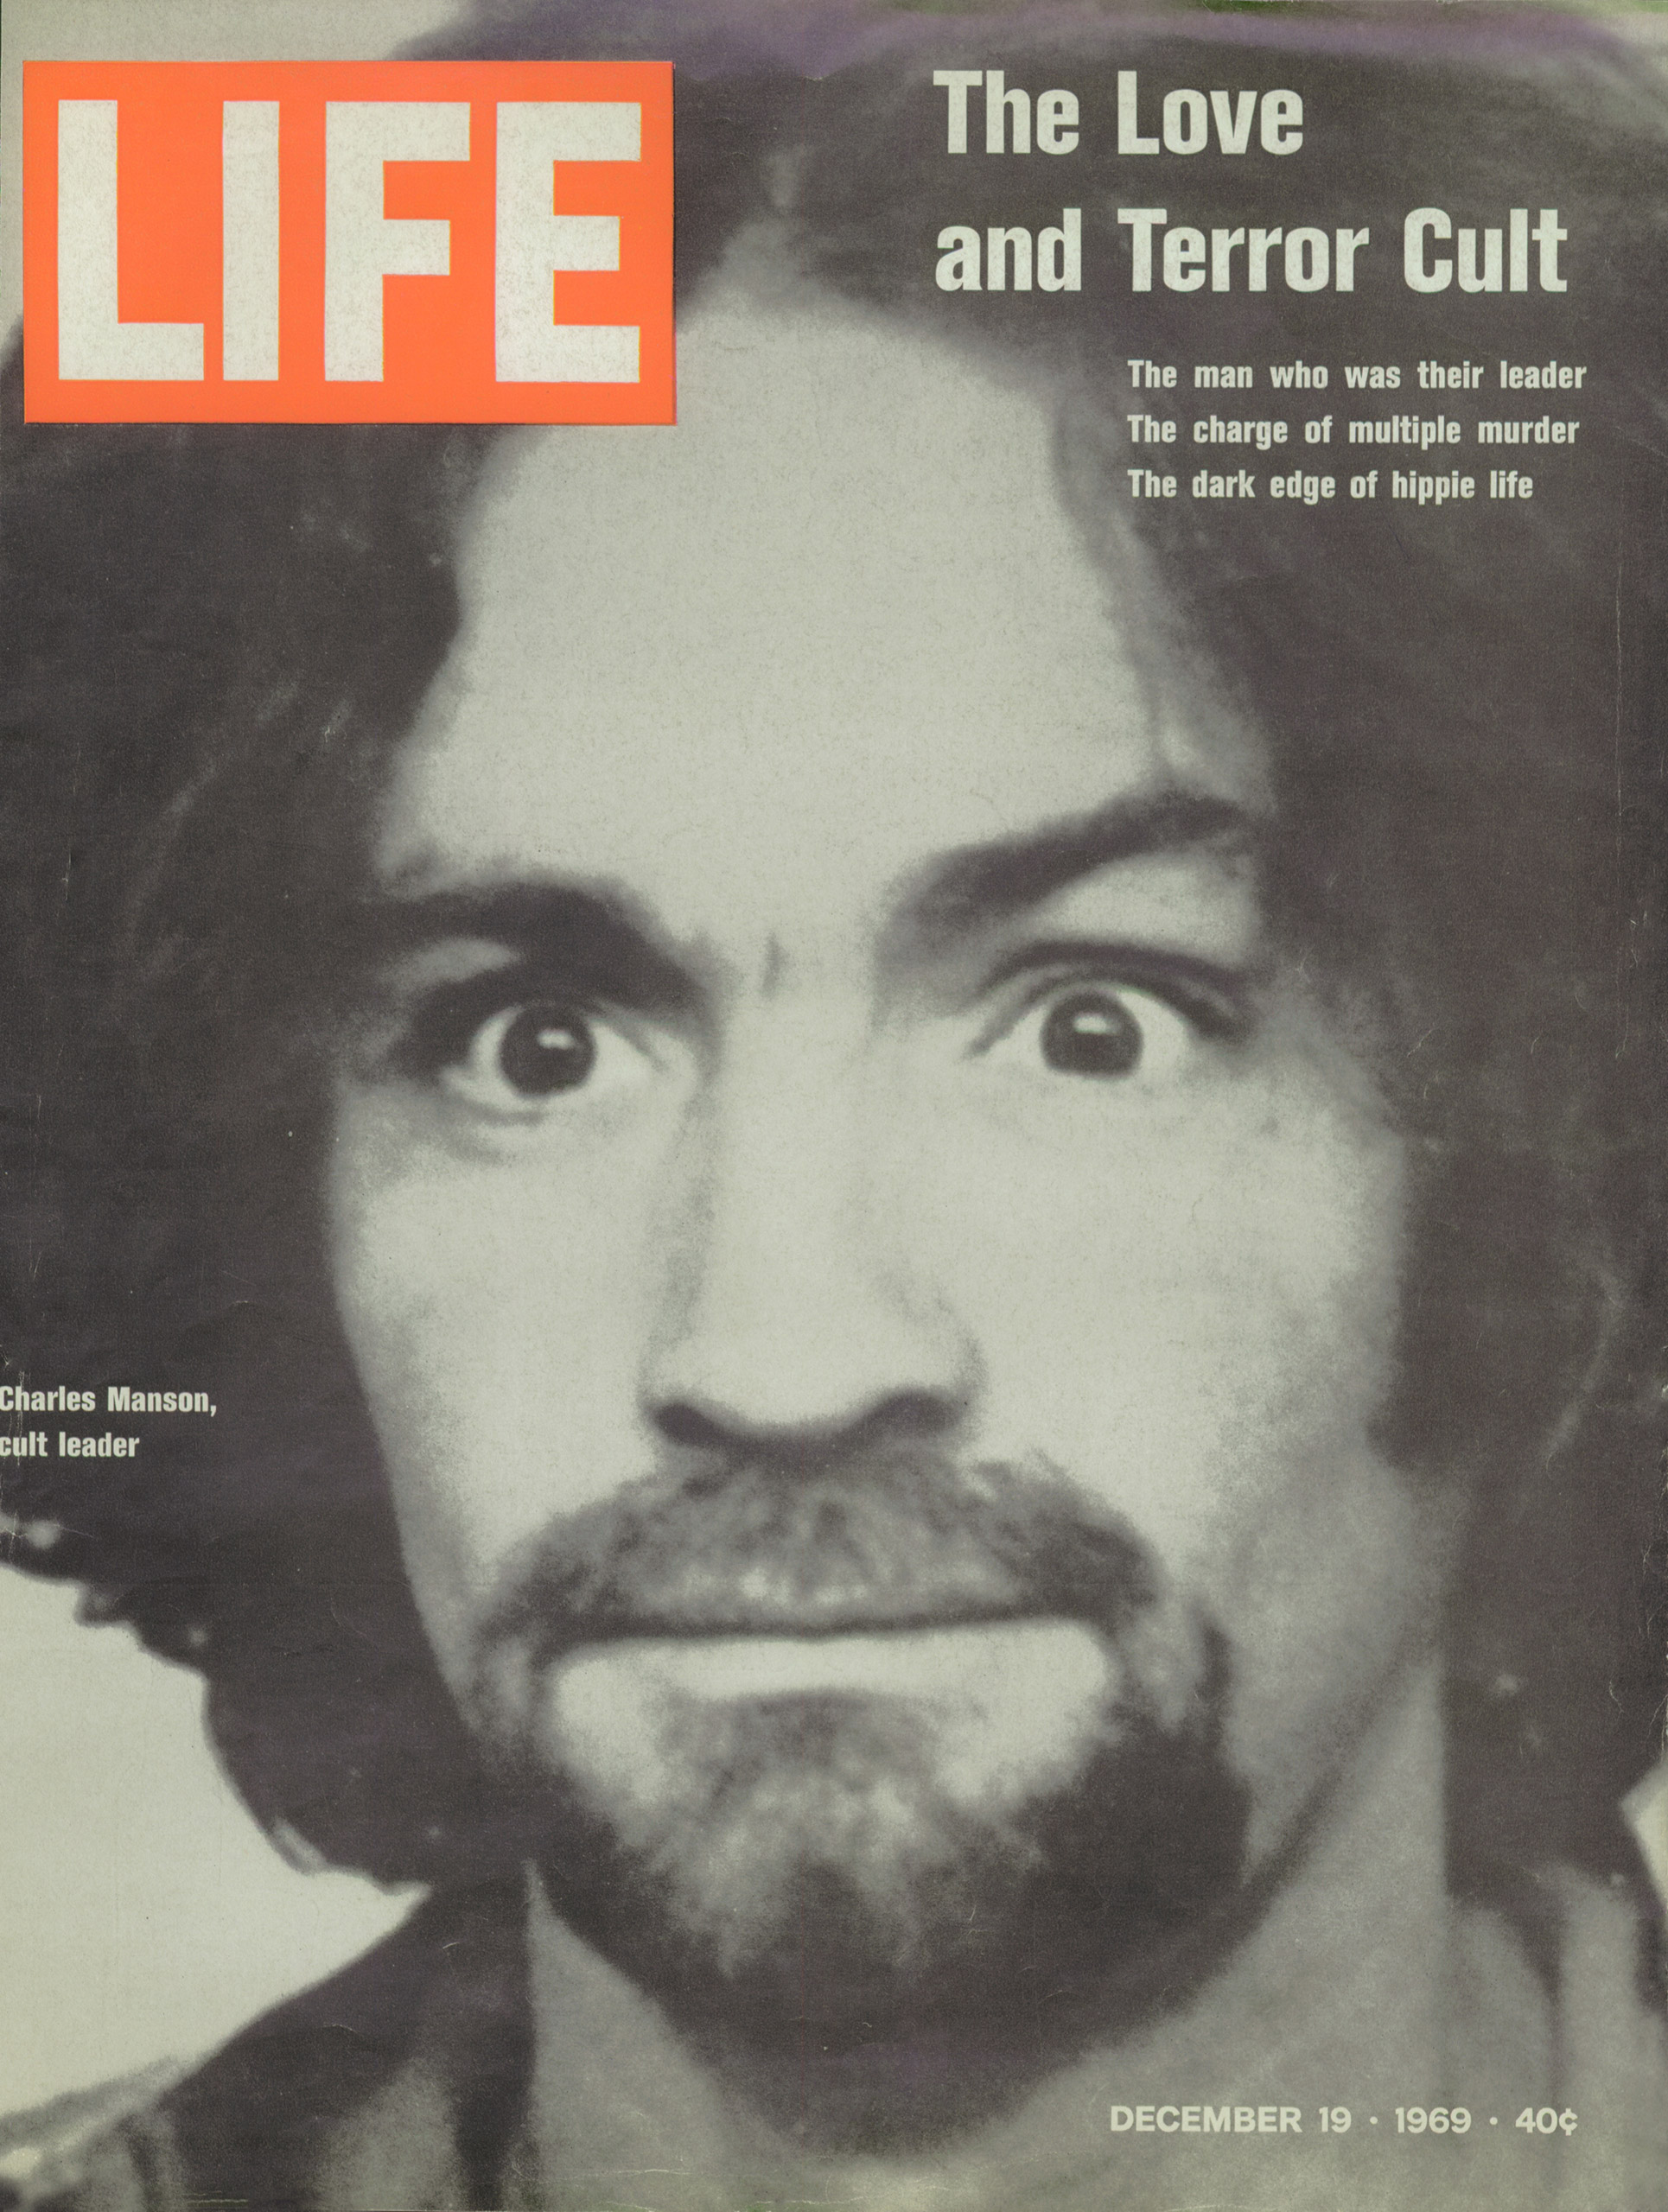 Dec. 19, 1969 cover of LIFE magazine.